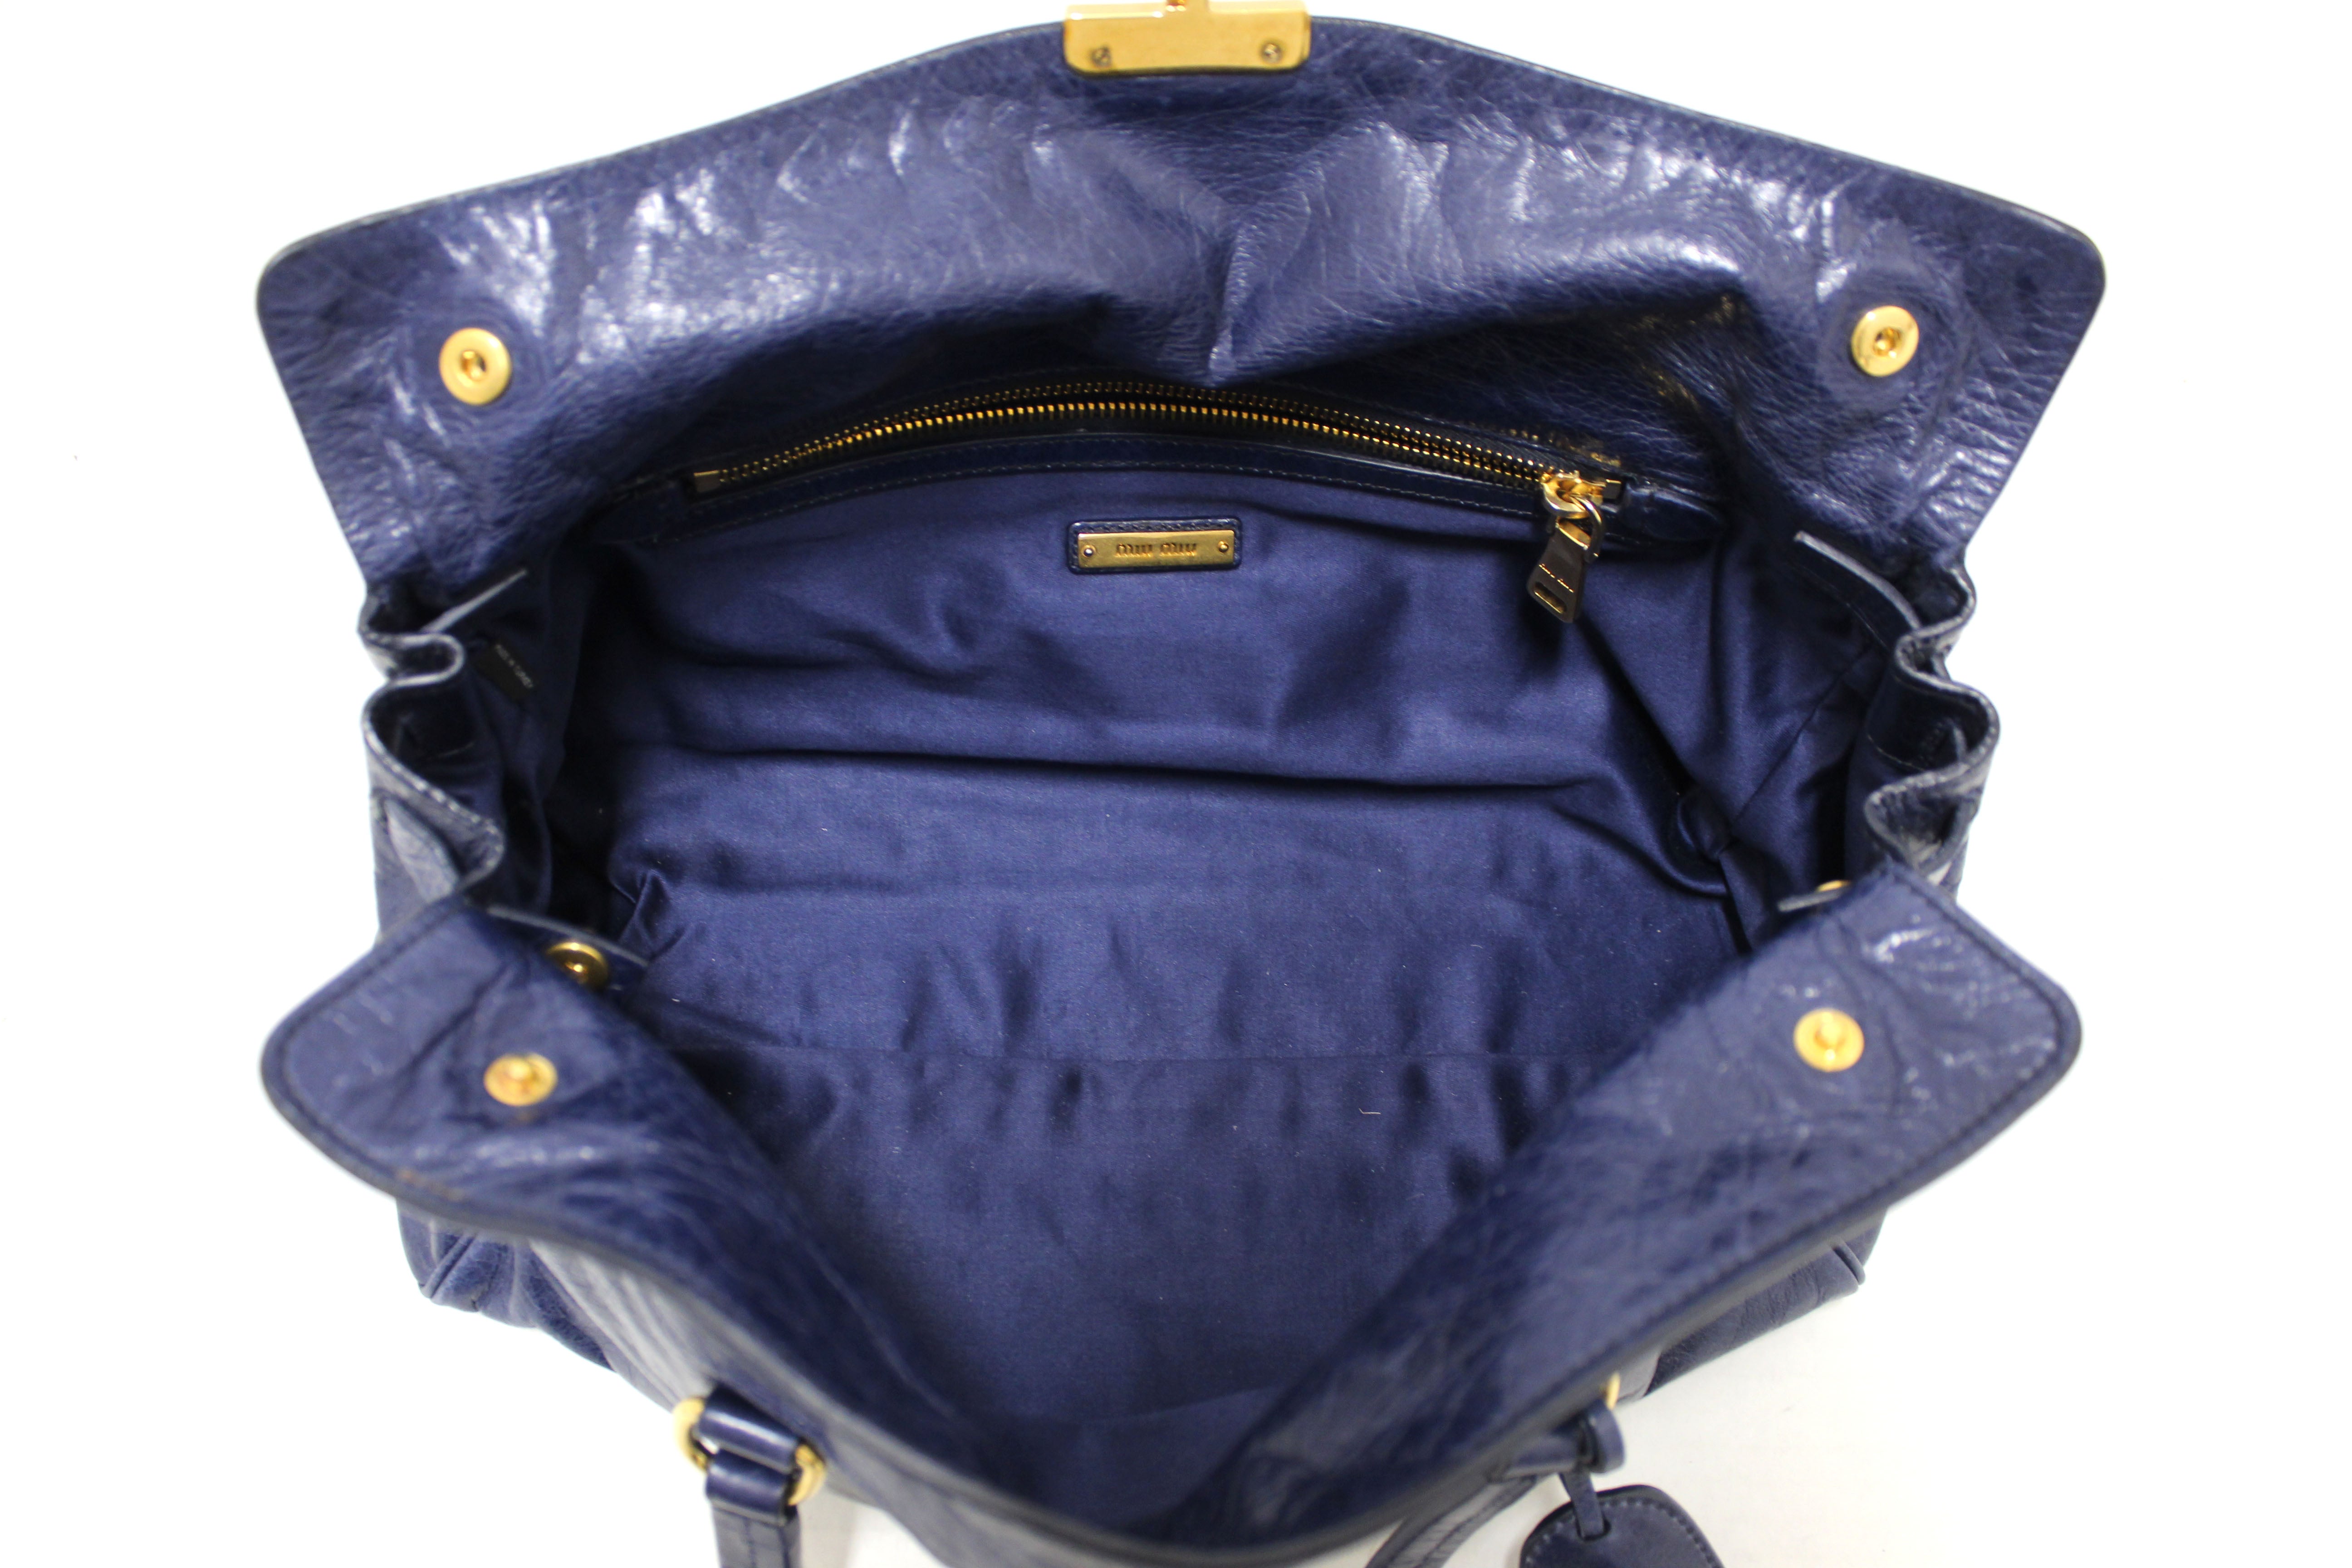 Miu Miu Vintage - Leather Handbag Bag - Black - Leather Handbag